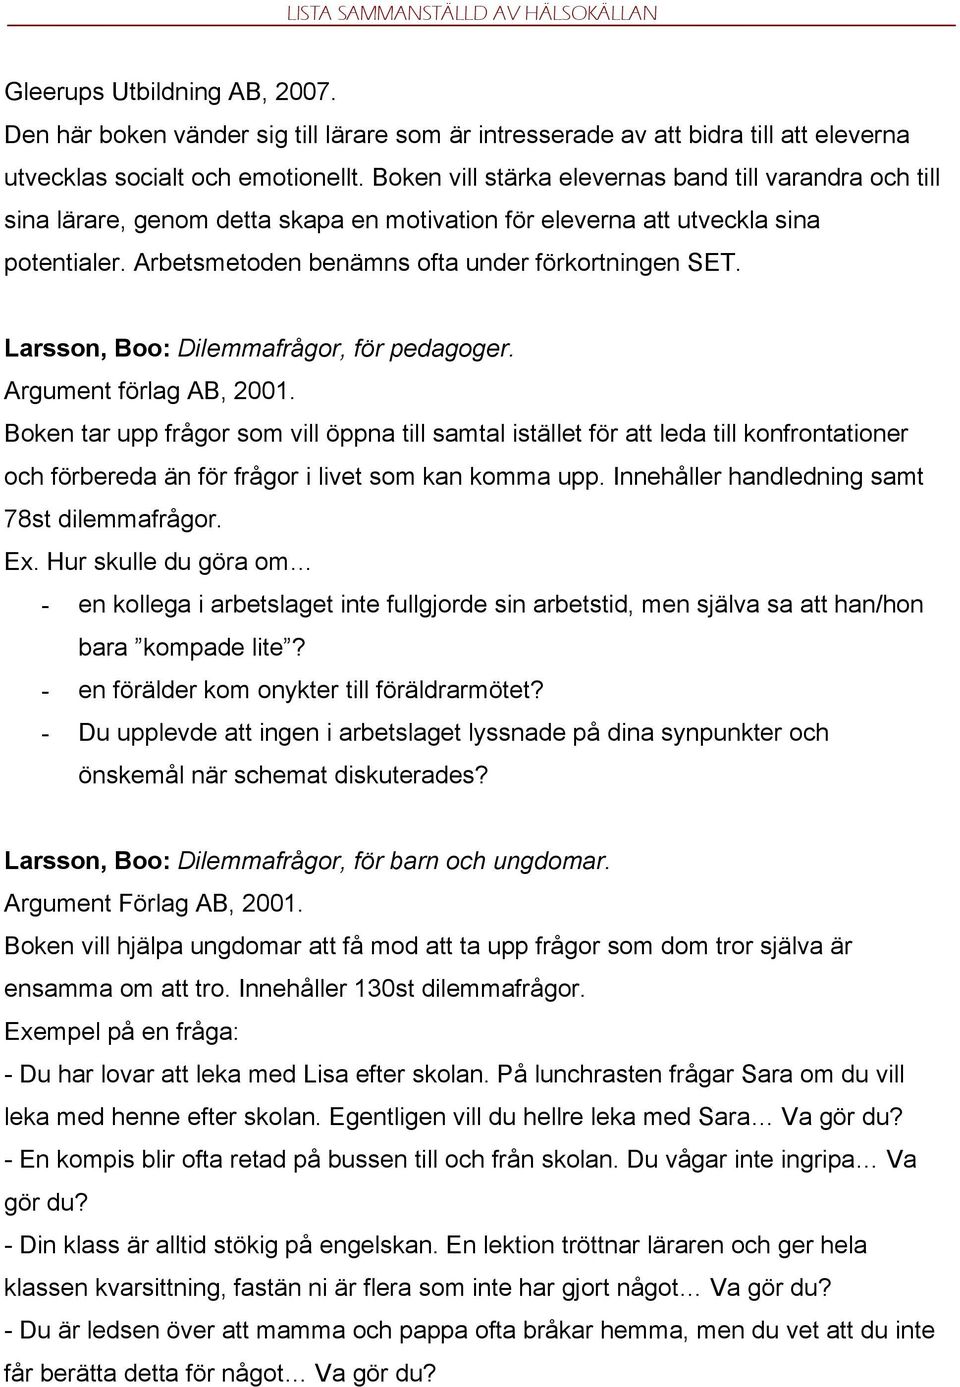 Larsson, Boo: Dilemmafrågor, för pedagoger. Argument förlag AB, 2001.